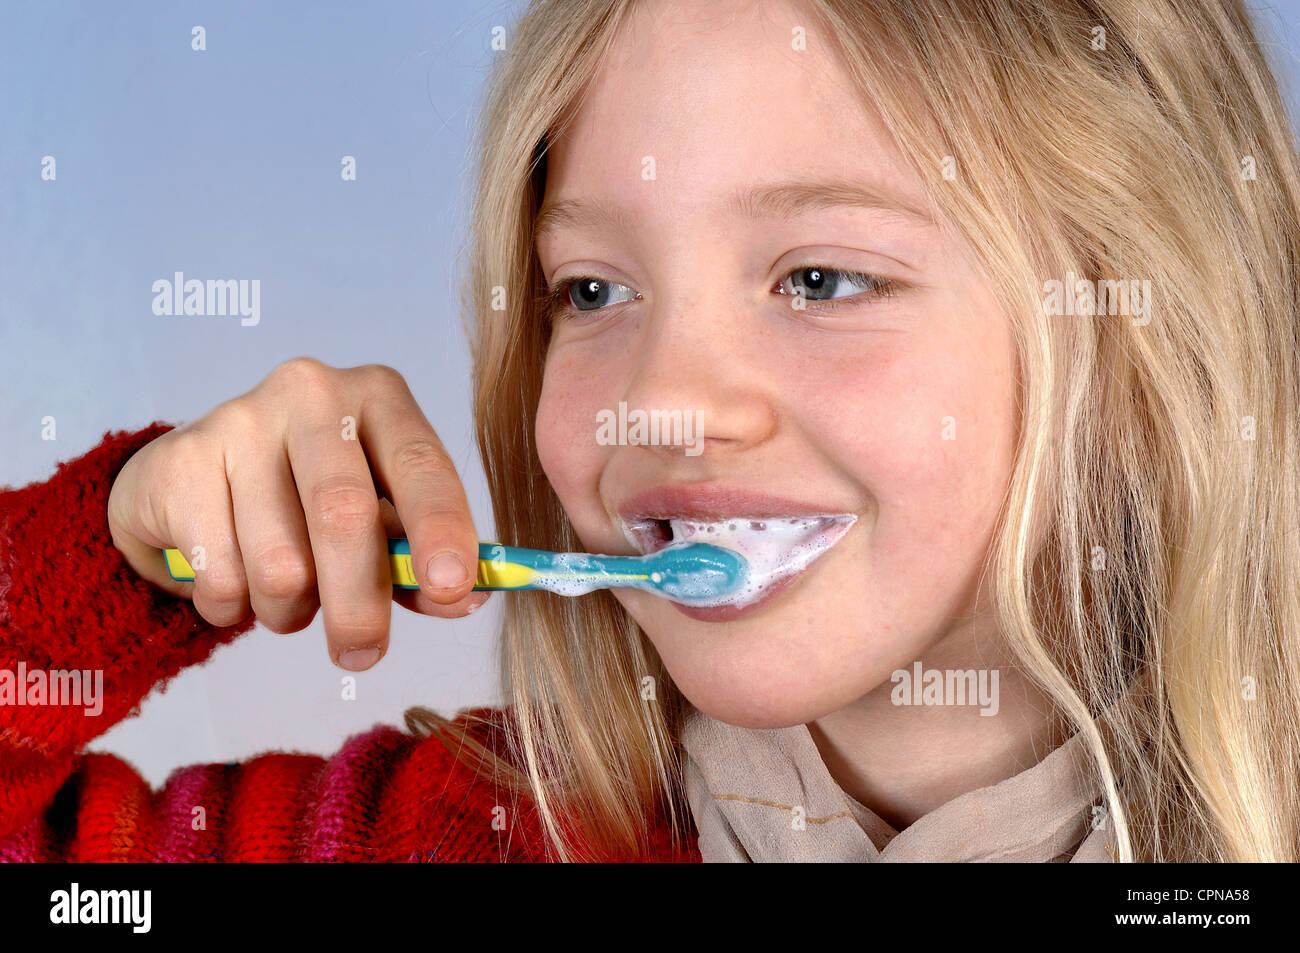 Cosmétiques, soins dentaires, fille, c'est dent de nettoyage avec une brosse à dents, l'Allemagne, l'Additional-Rights Clearance-Info-Not-Available- Banque D'Images